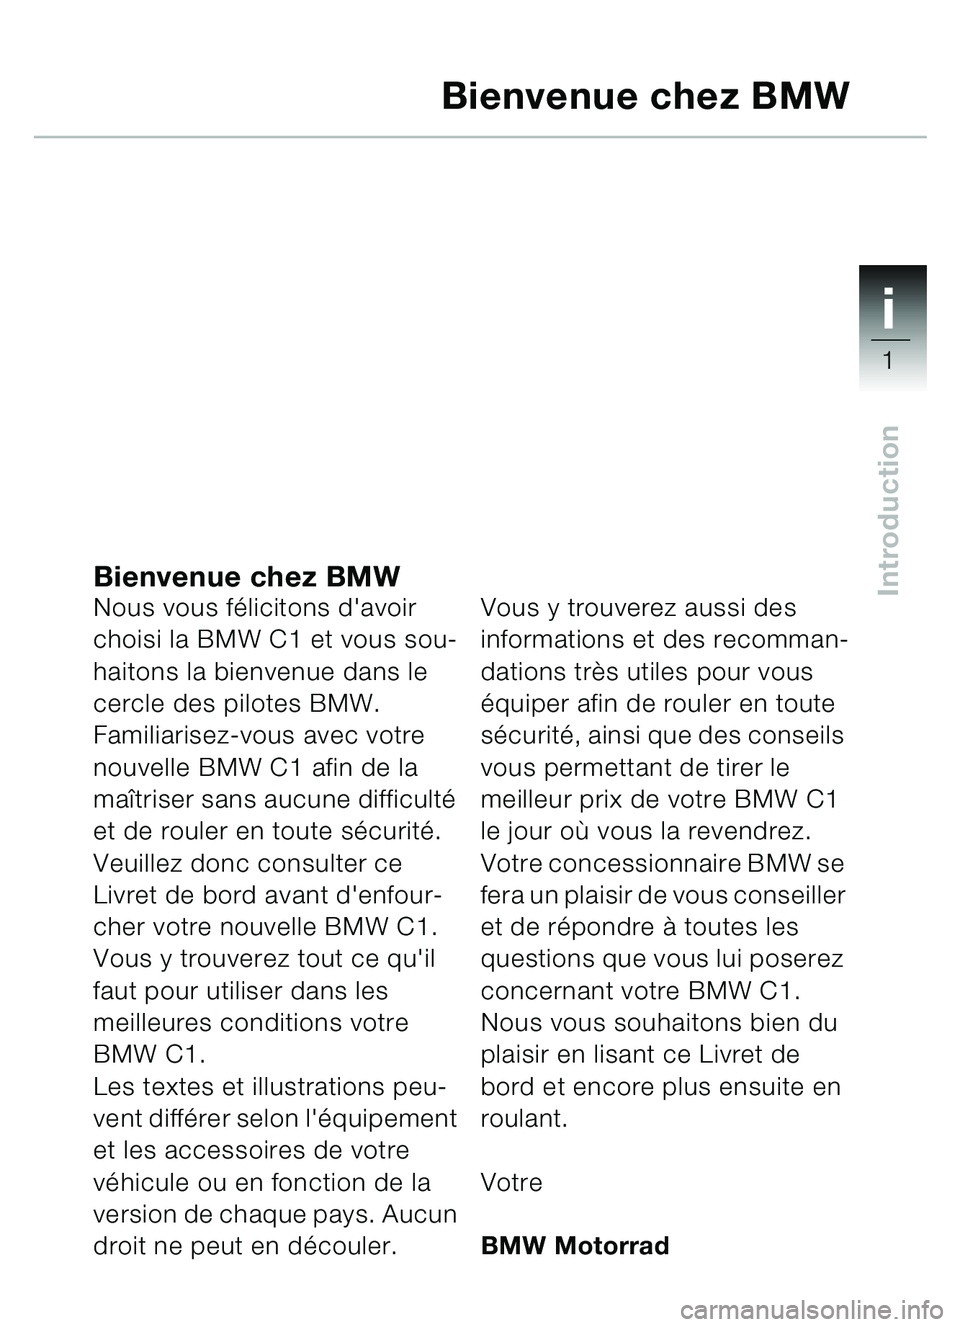 BMW MOTORRAD C1 2000  Livret de bord (in French) 1i
1
IntroductionBienvenue chez BMWNous vous félicitons davoir 
choisi la BMW C1 et vous sou-
haitons la bienvenue dans le 
cercle des pilotes BMW.
Familiarisez-vous avec votre 
nouvelle BMW C1 afin